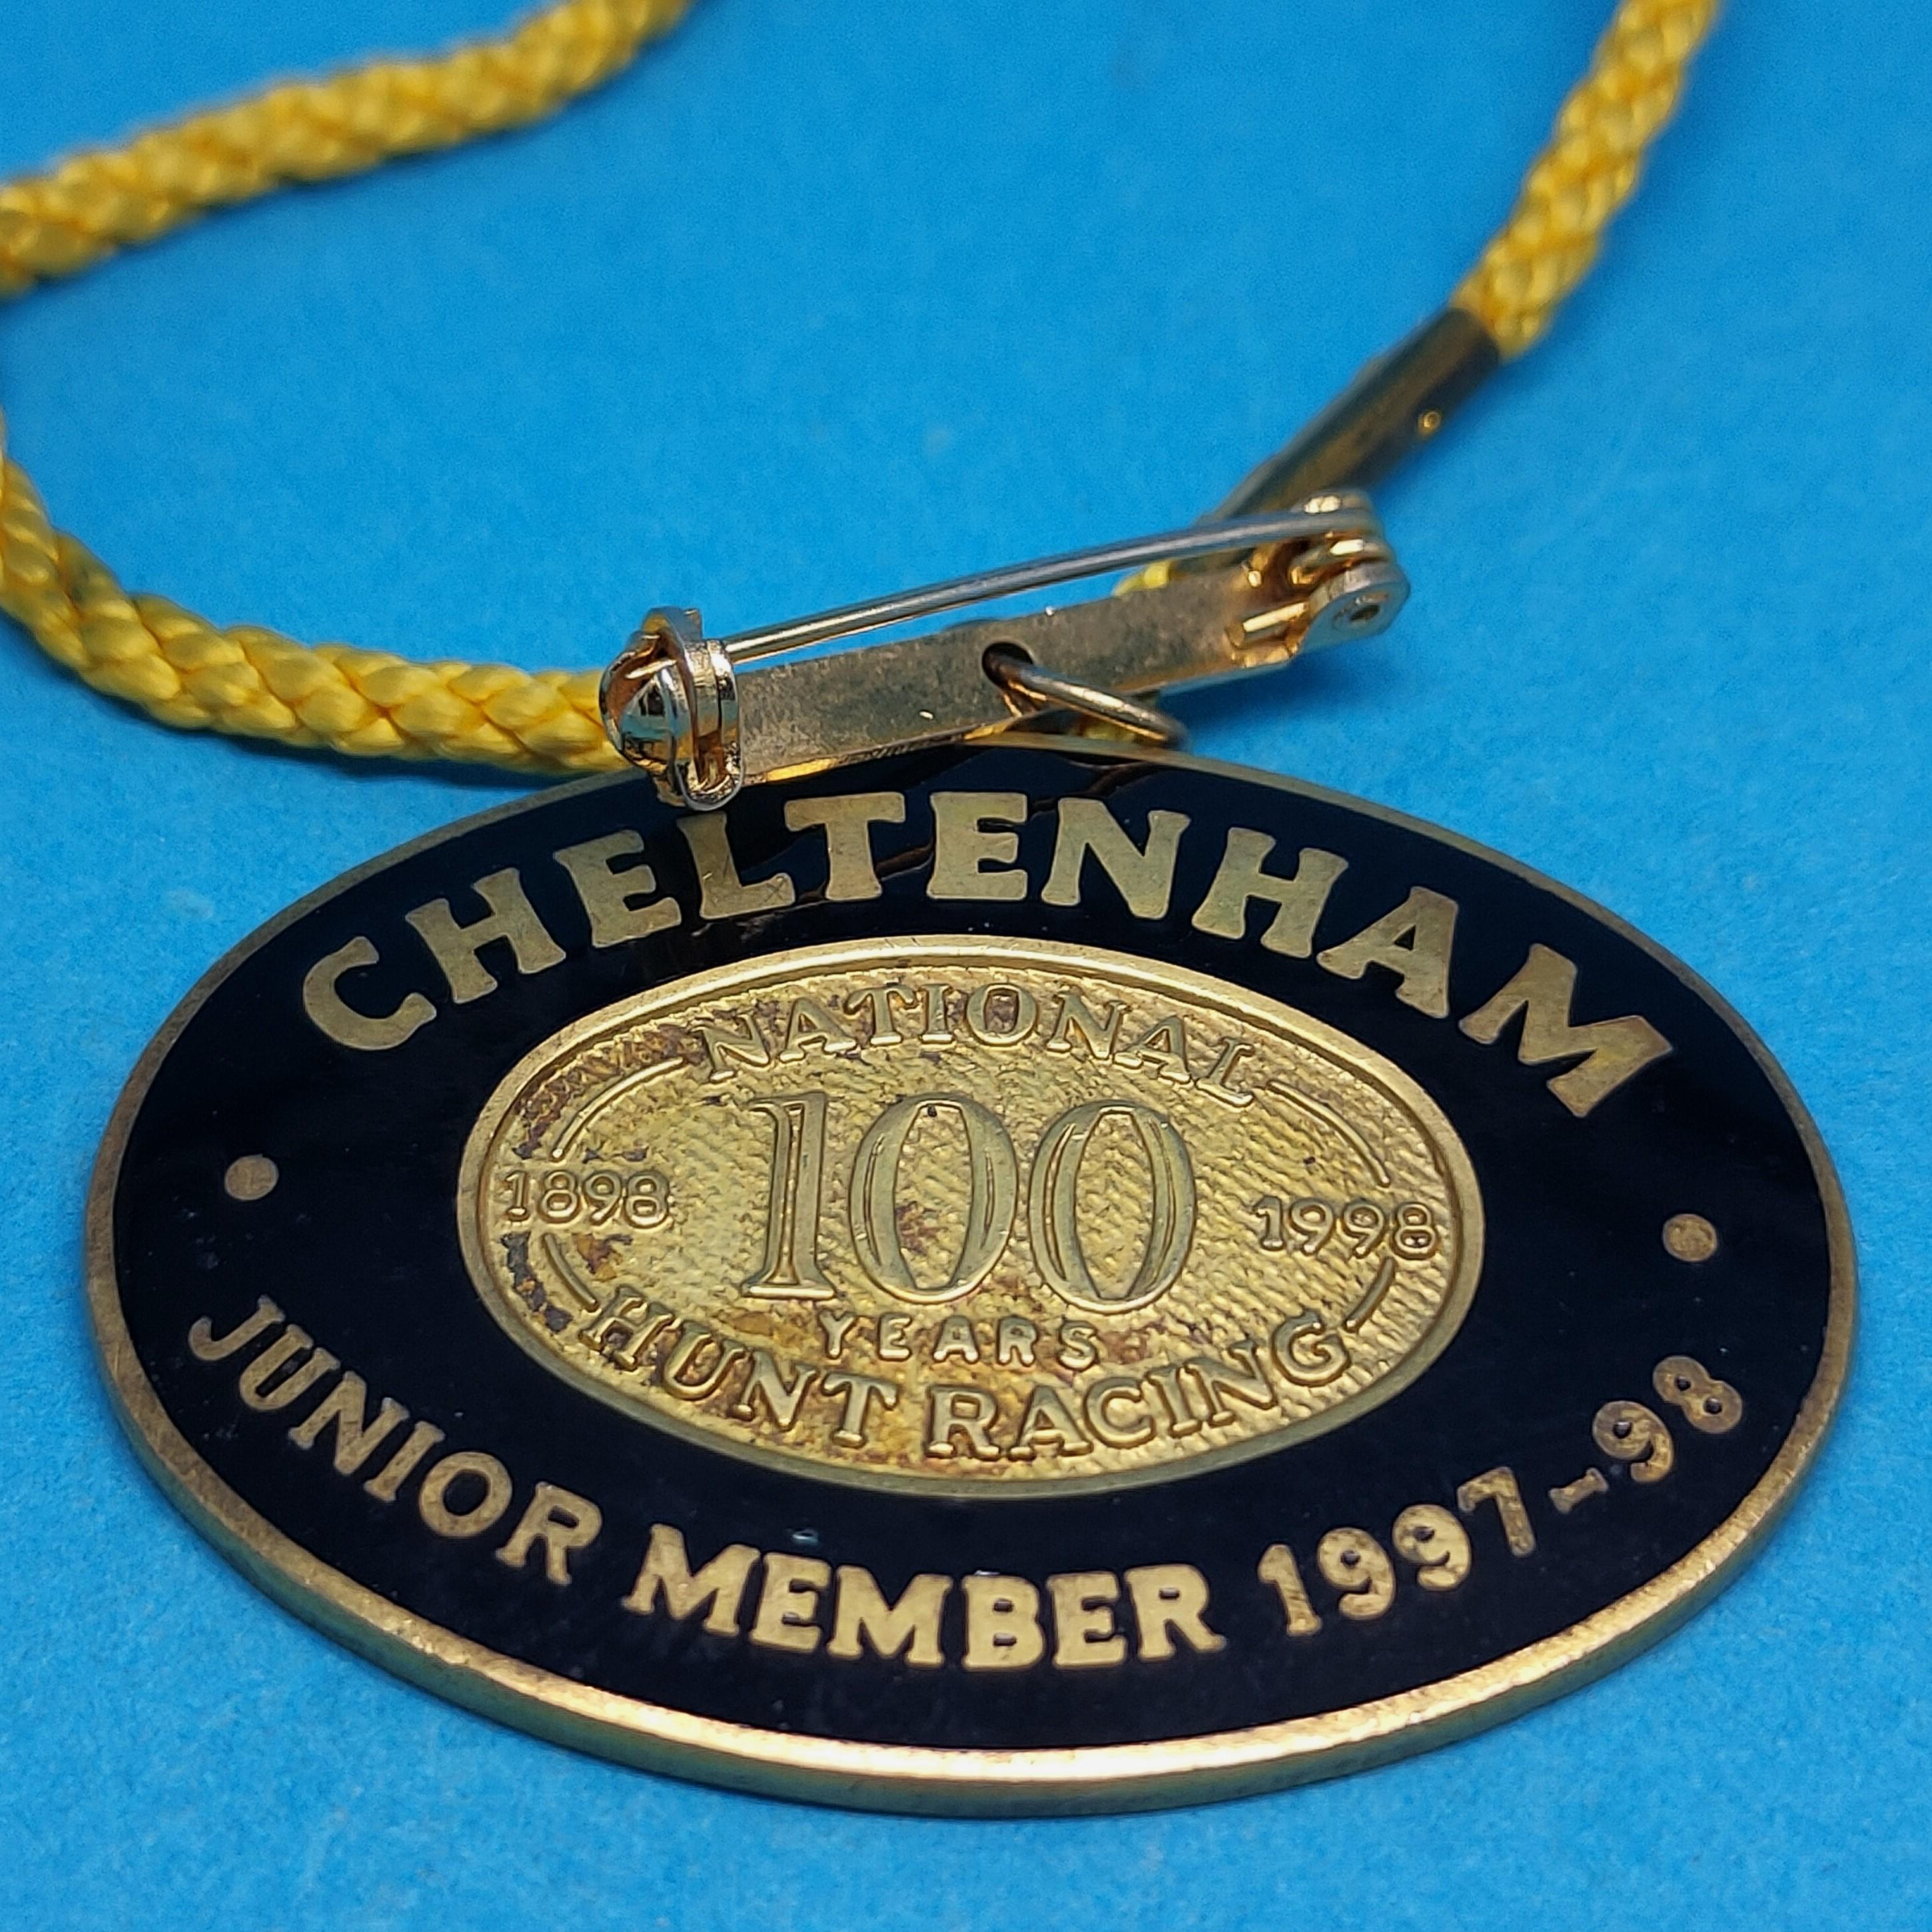 Cheltenham Junior 1997 / 1998